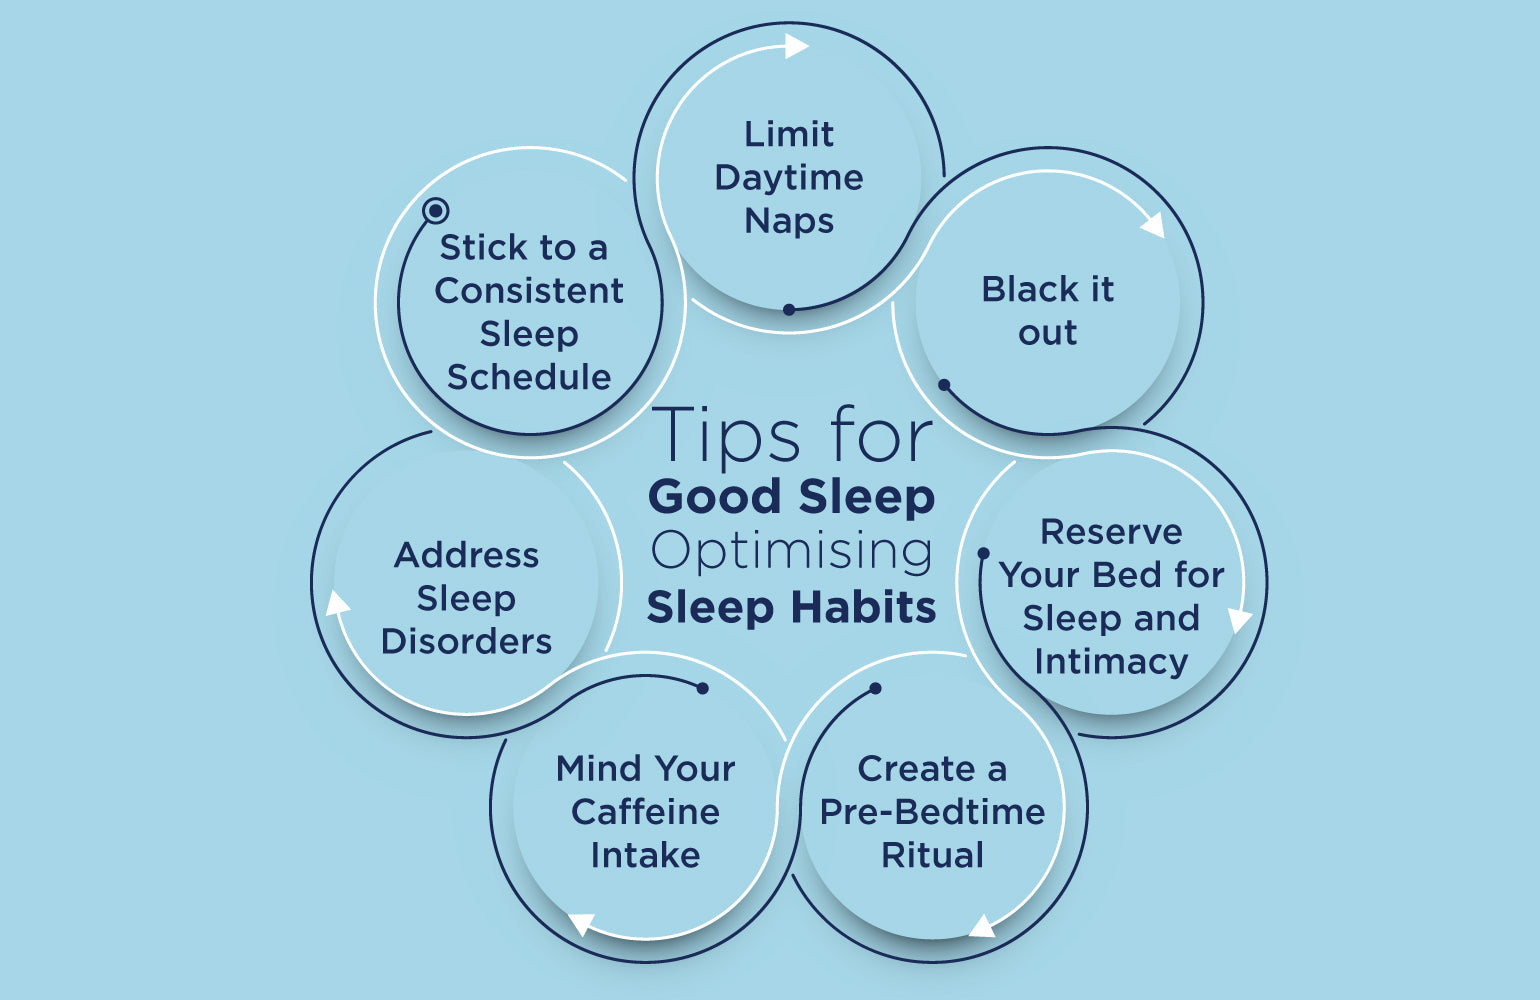 Tips for Good Sleep: Optimising Sleep Habits